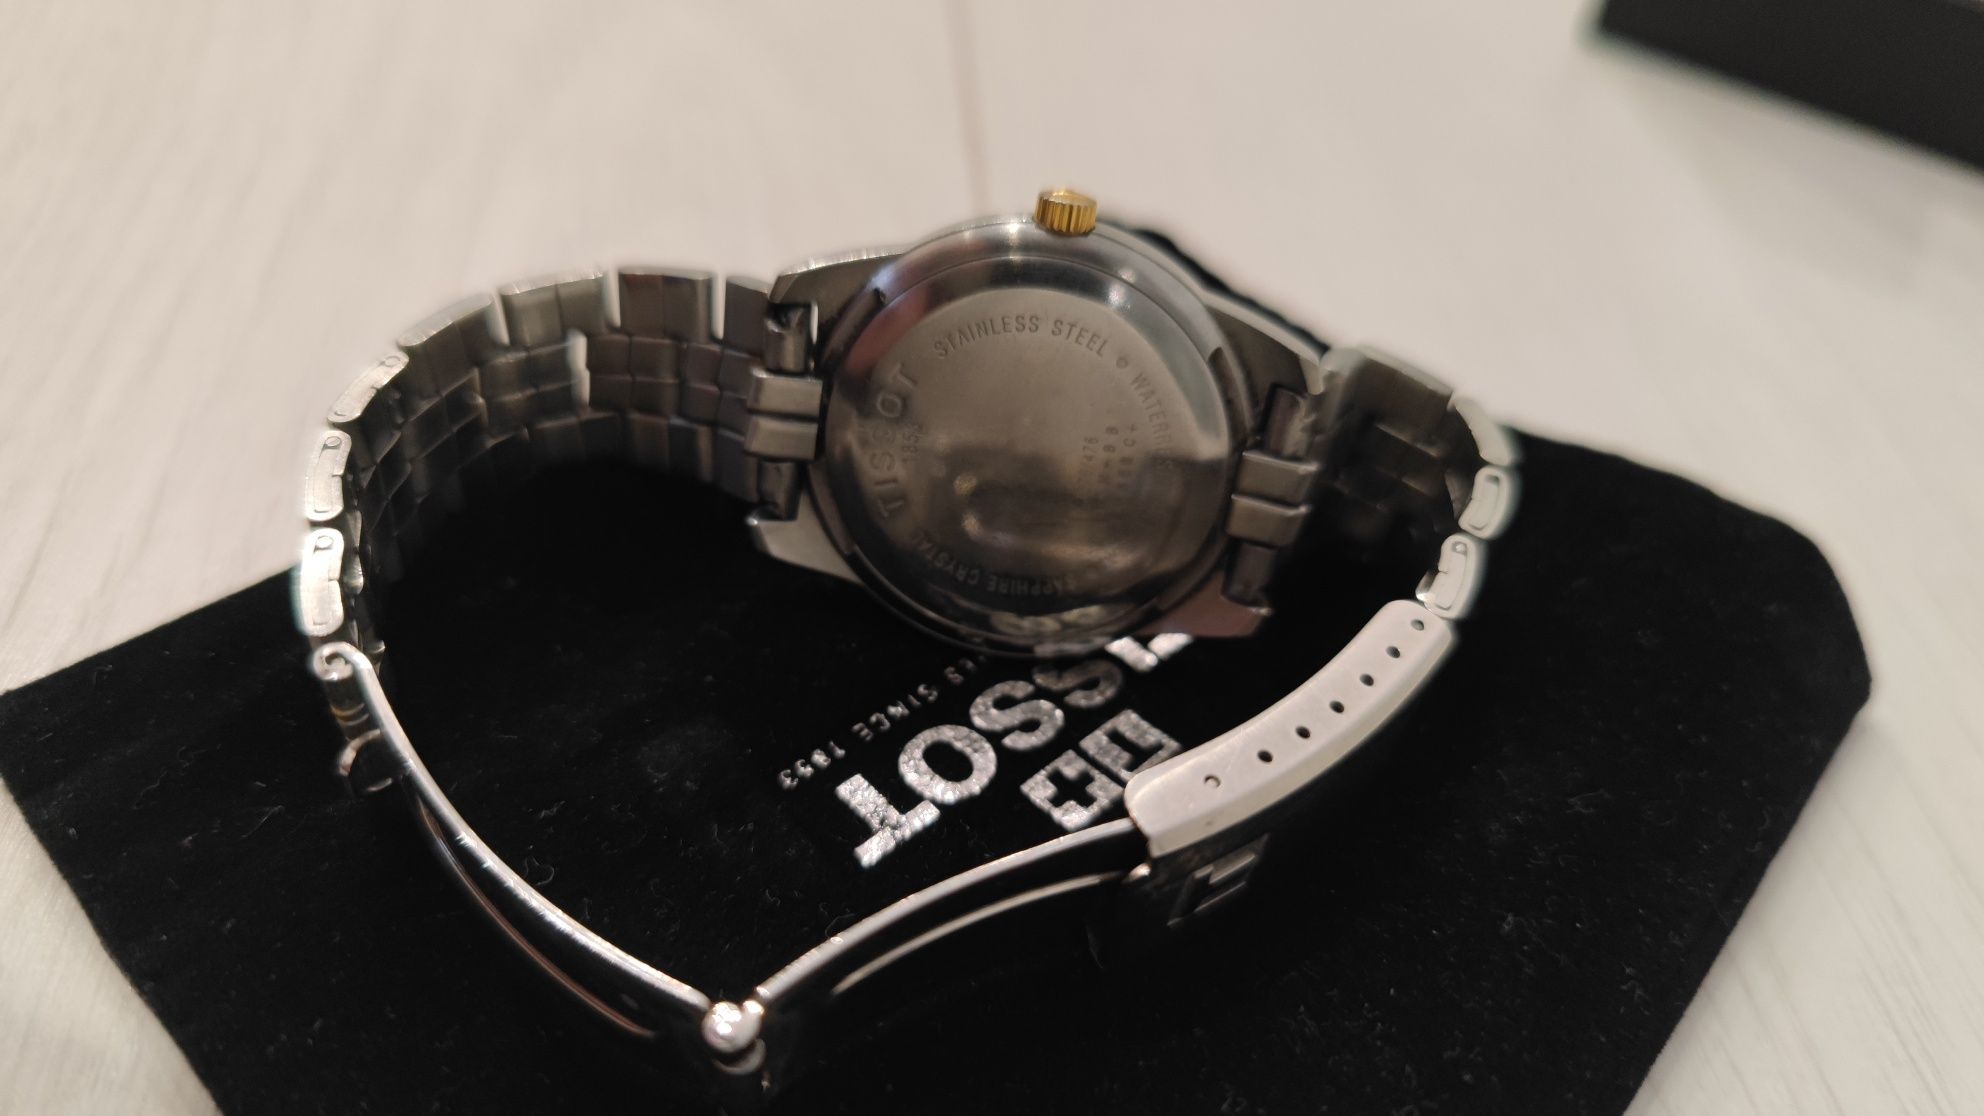 Оригінальний годинник TISSOT T-CLASSIC PR 50 Quartz з позолотою